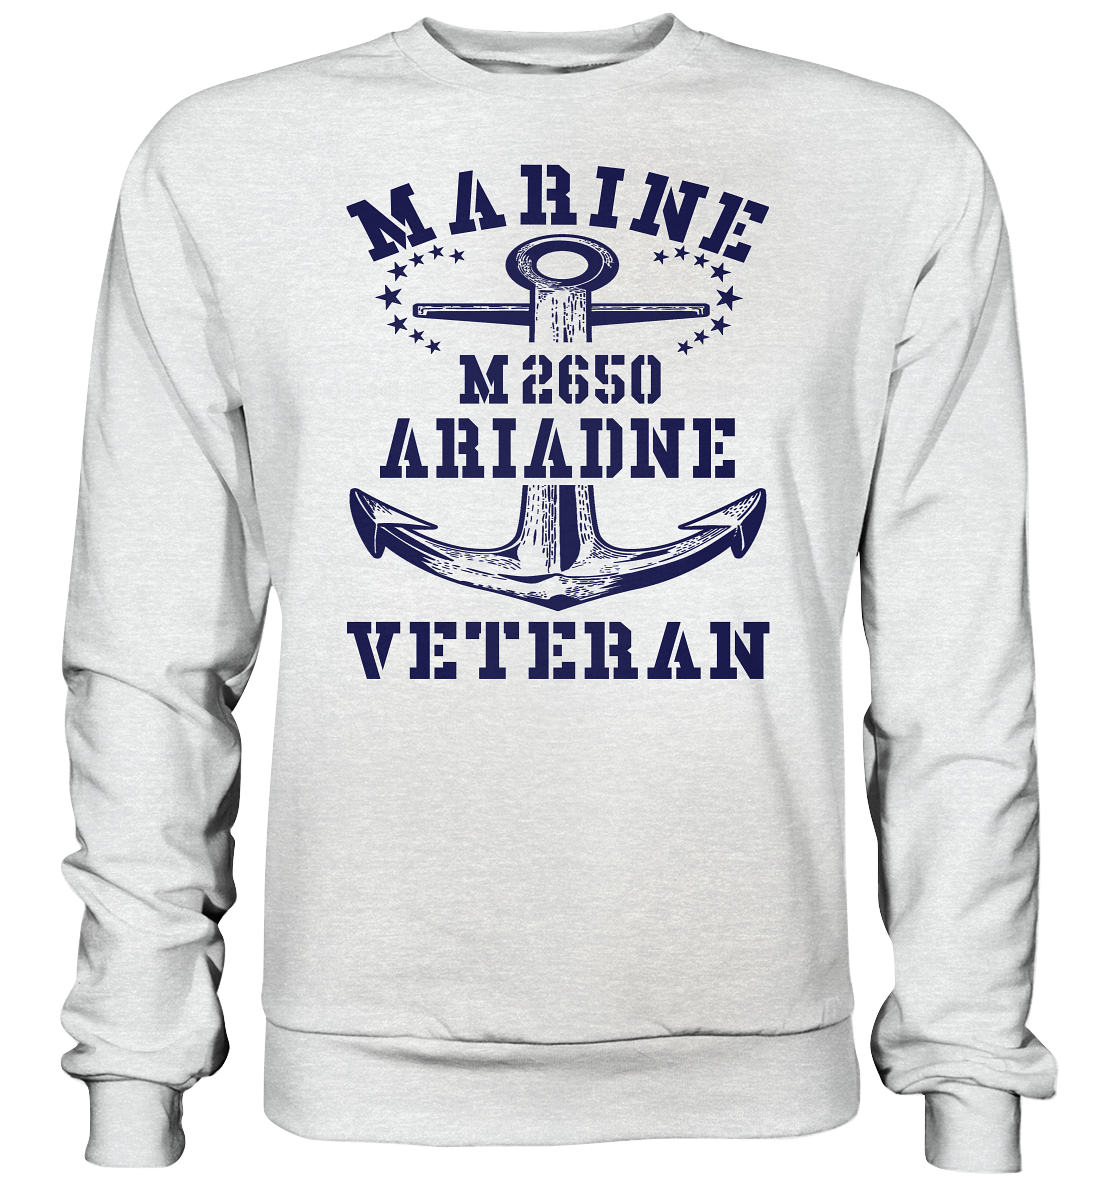 BiMi M2650 ARIADNE Marine Veteran - Premium Sweatshirt